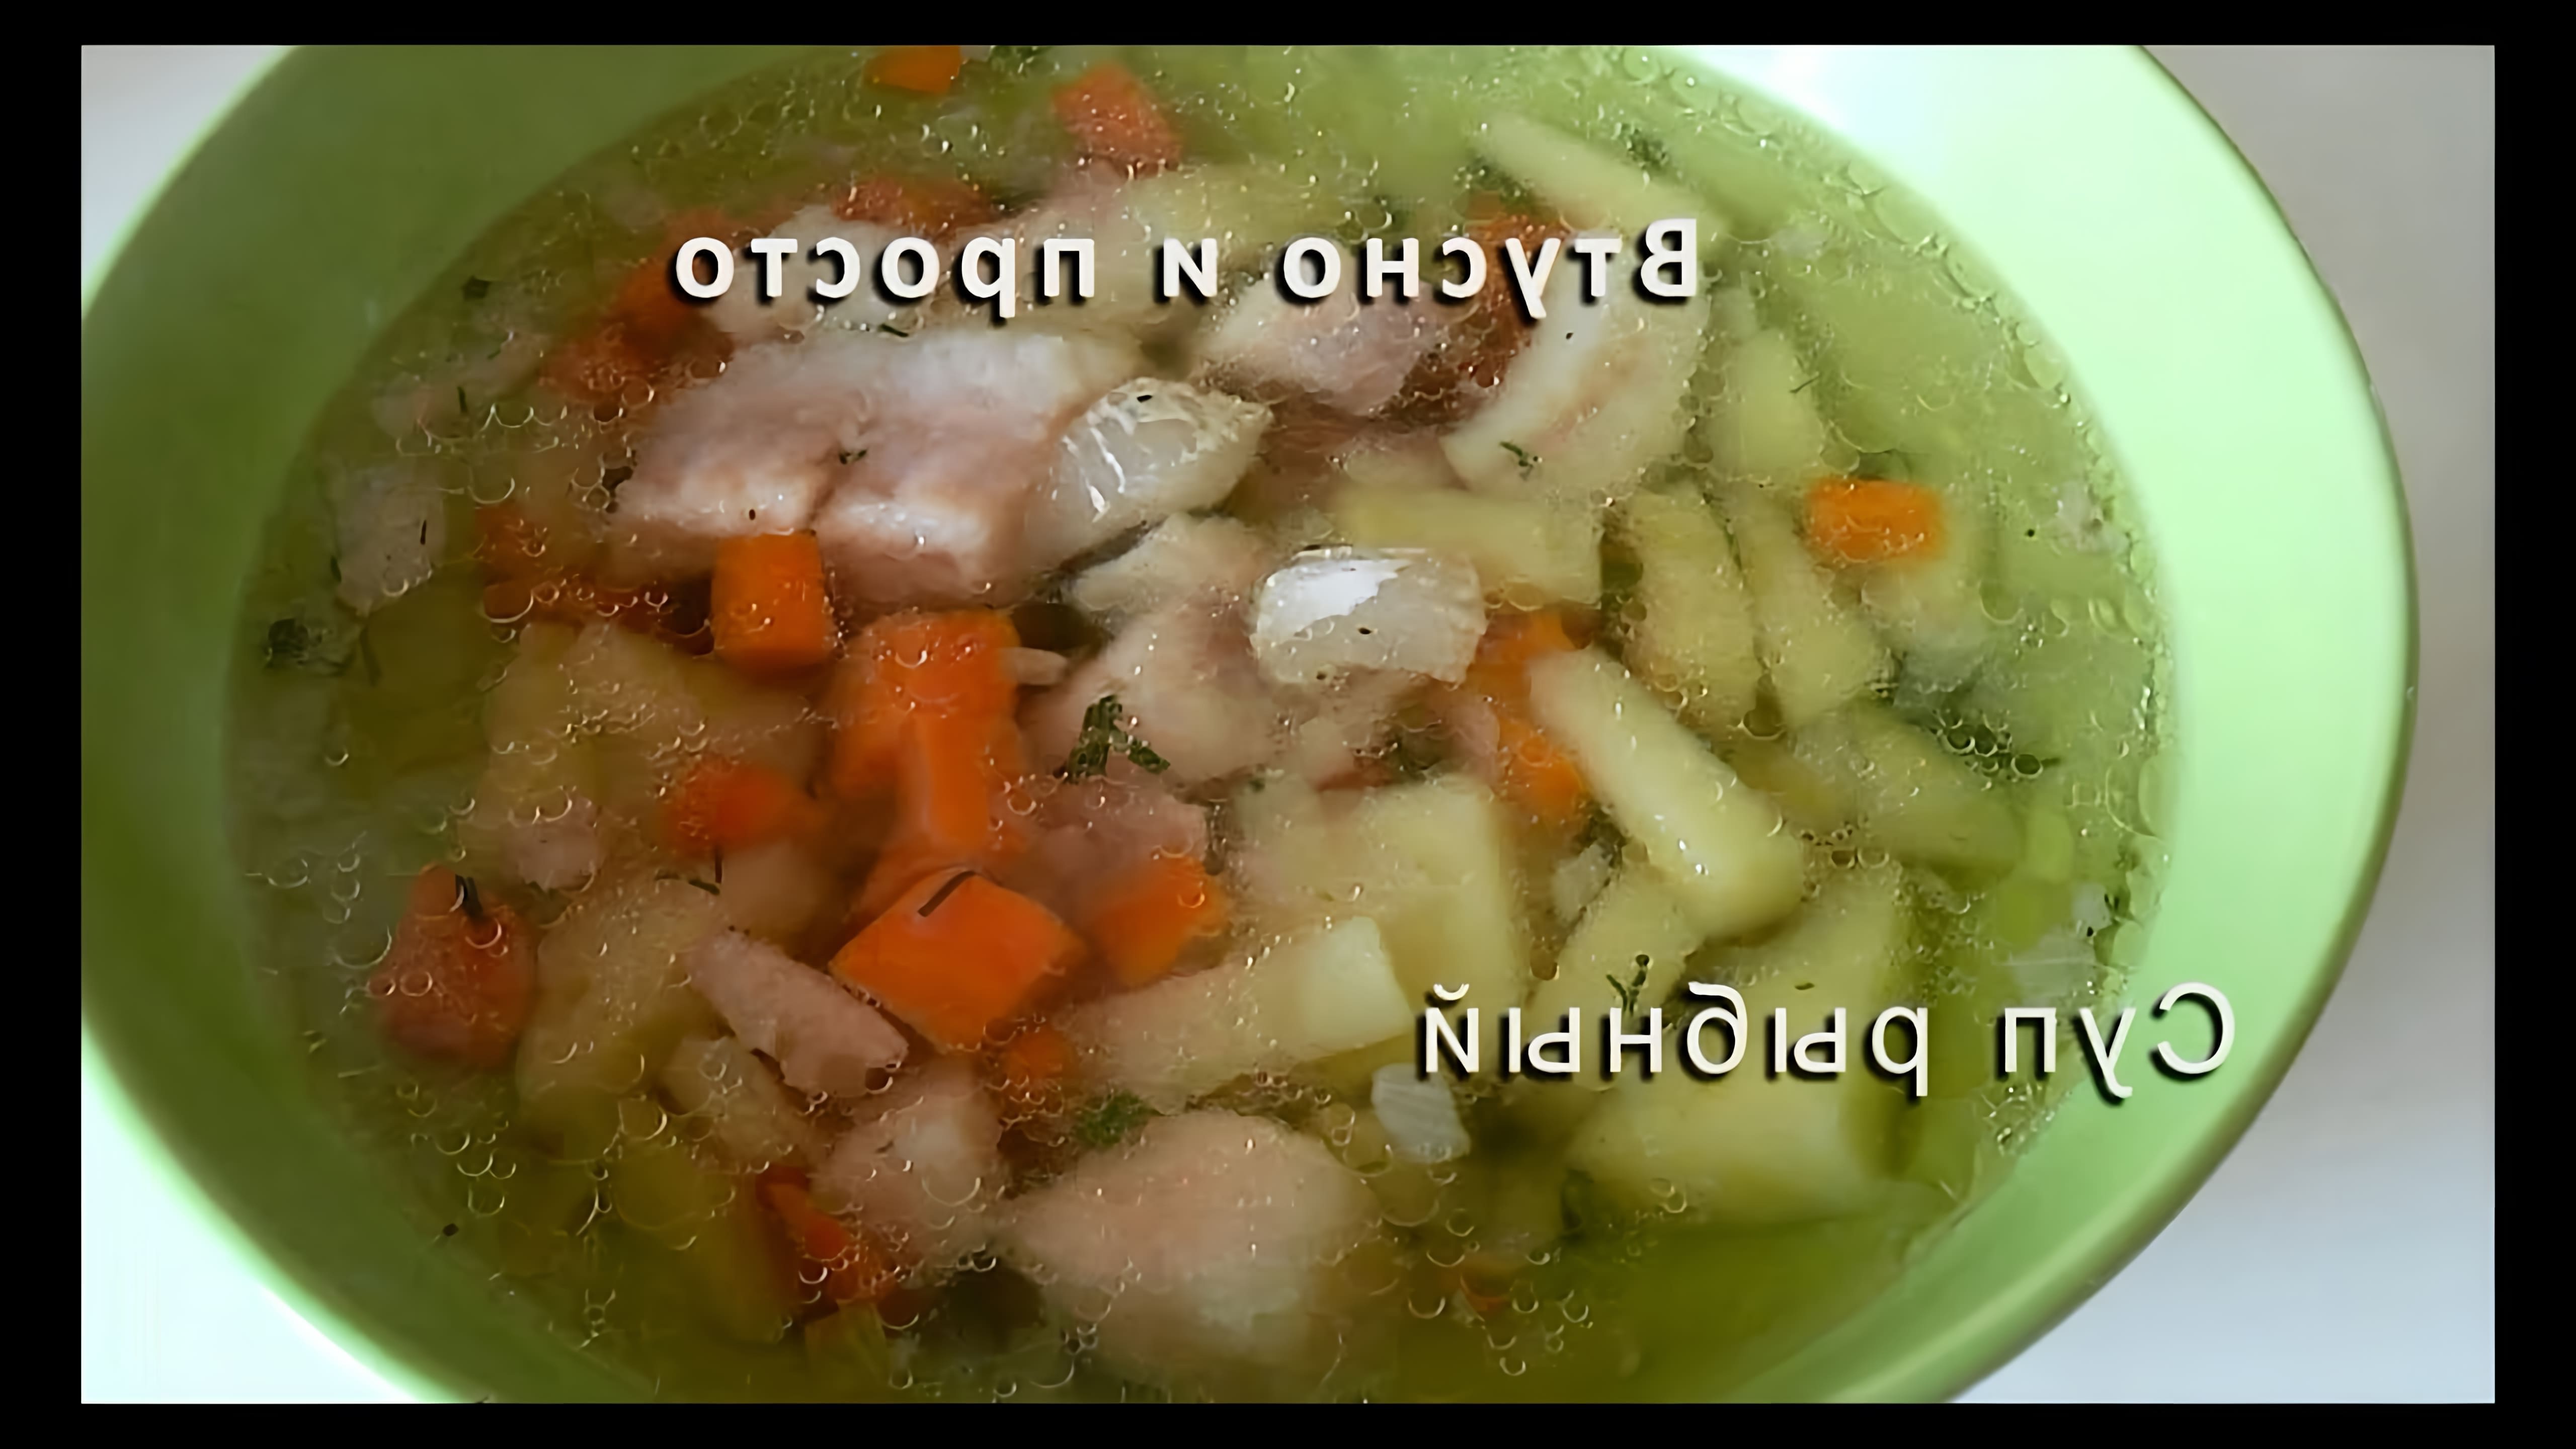 В этом видео демонстрируется рецепт приготовления рыбного супа с пангасиусом